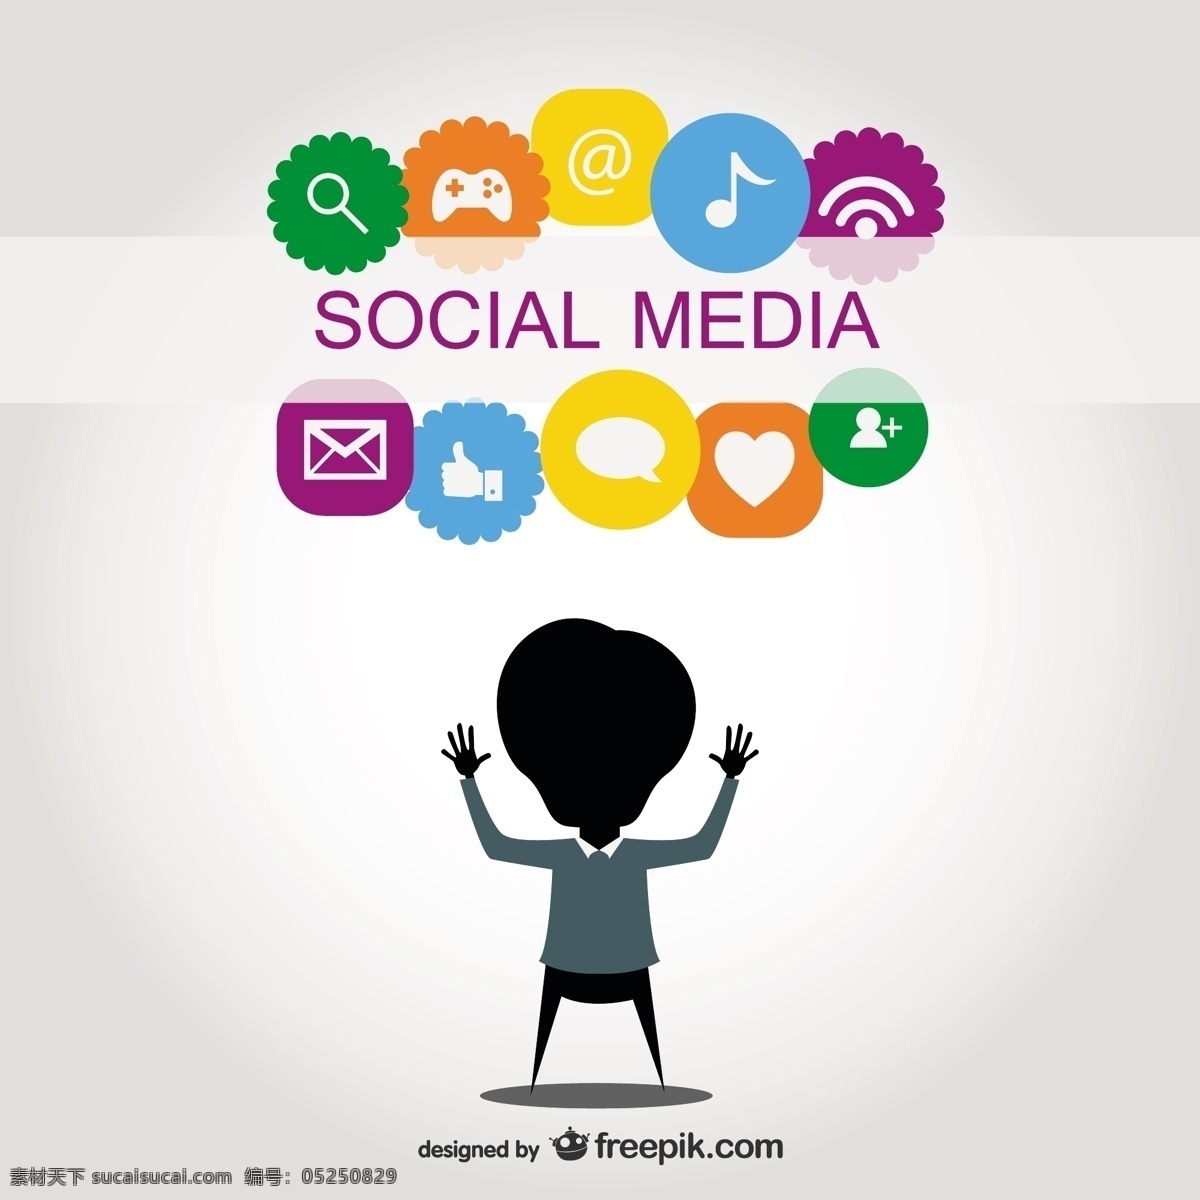 社会 媒体 符号 图表 人 图标 社交媒体 模板 社会媒体图标 图形 轮廓 布局 展示 沟通 平面设计 图表设计 图 数据 白色